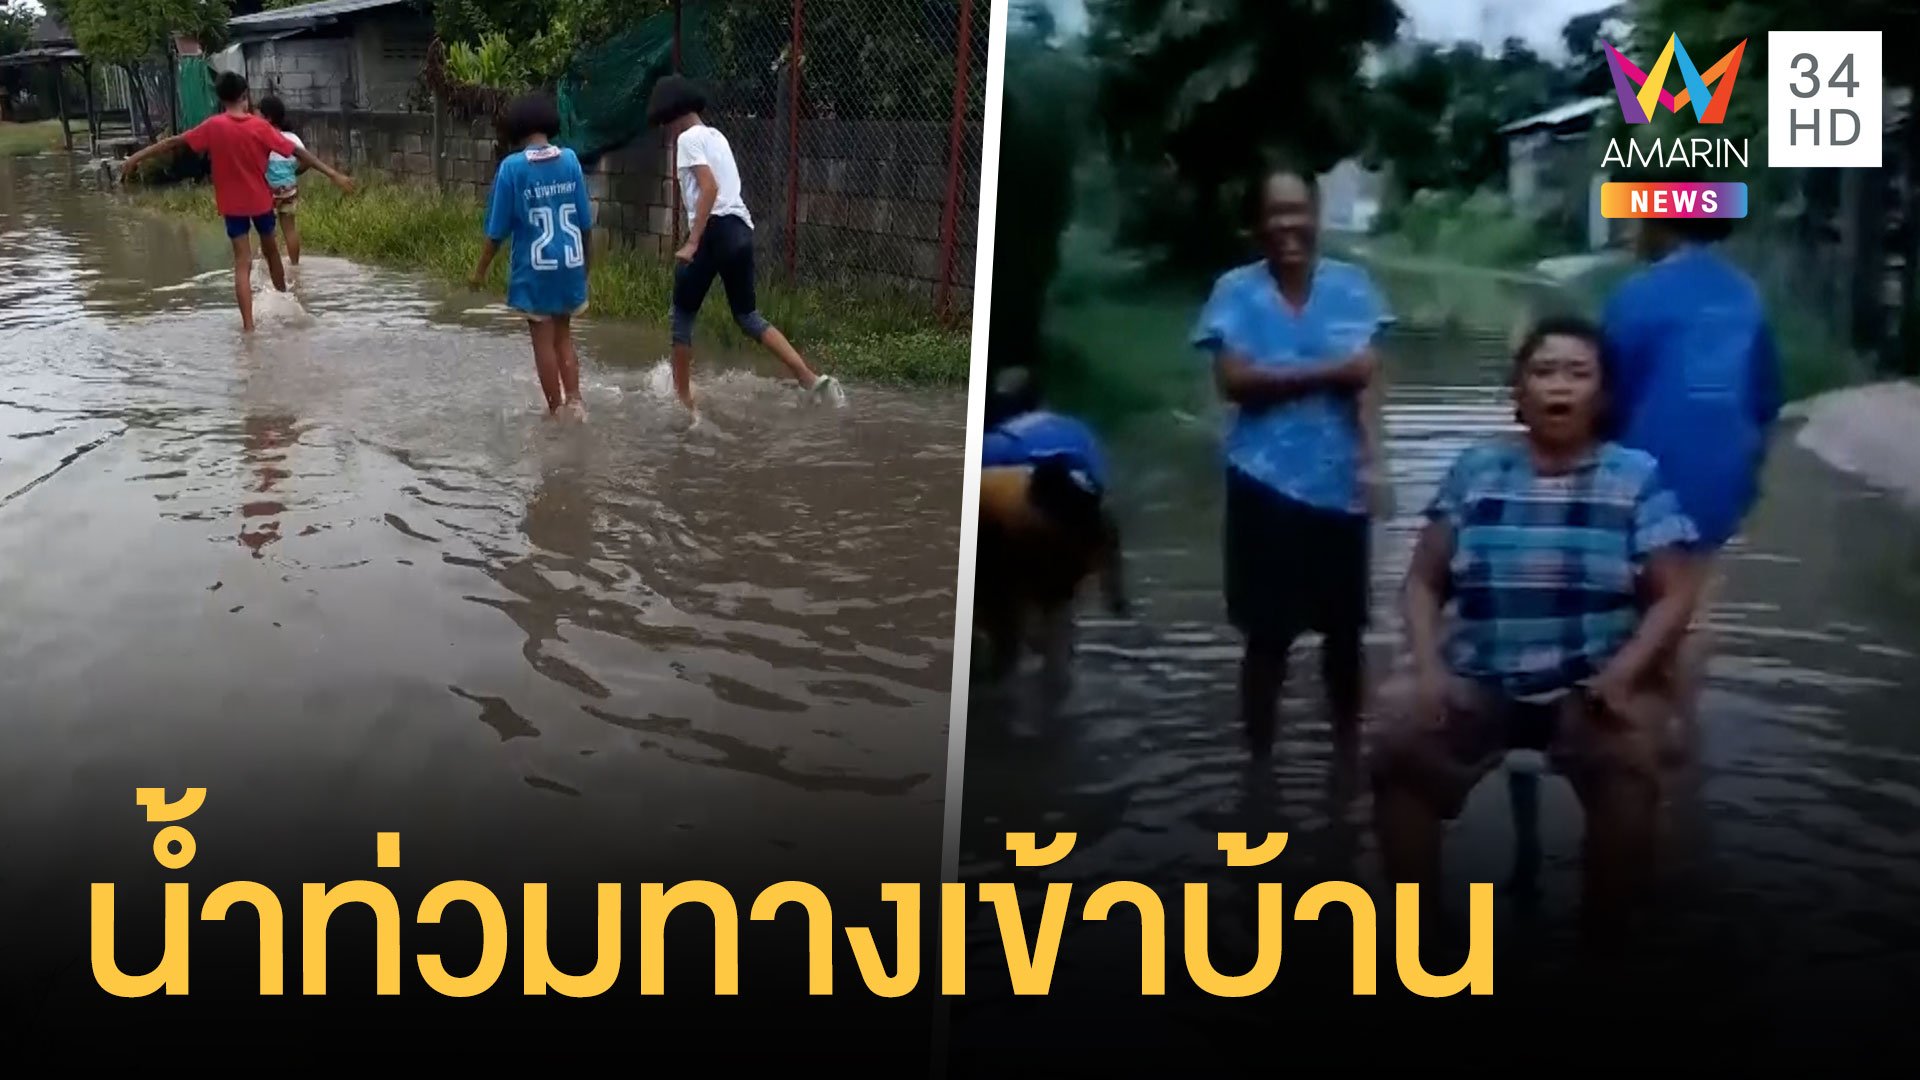 ชาวบ้านถ่ายคลิปประชดฝนตกทีน้ำท่วมทางเข้าหมู่บ้าน | ข่าวอรุณอมรินทร์ | 11 ก.ค. 64 | AMARIN TVHD34